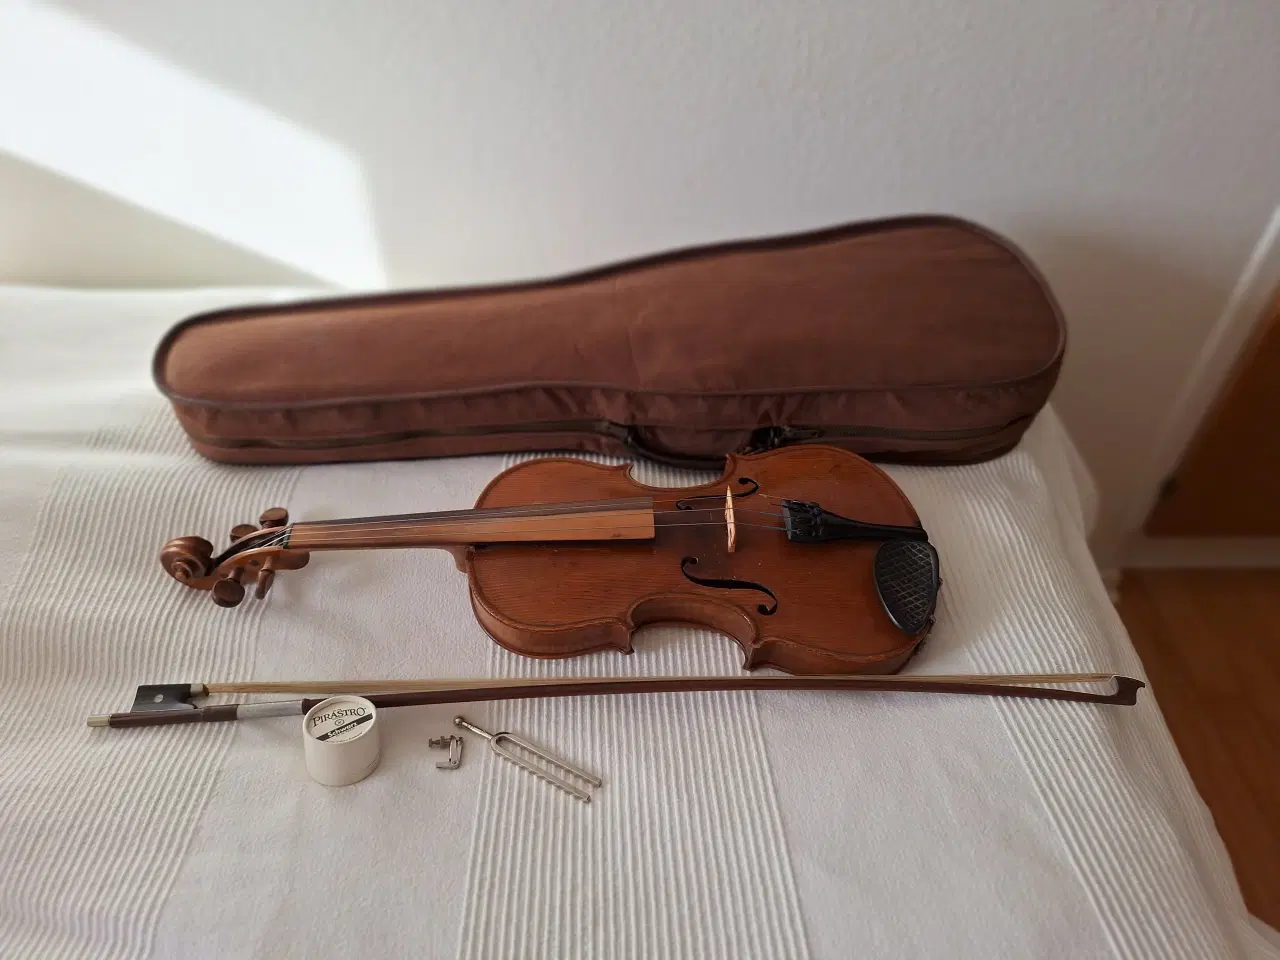 Billede 4 - Violin med bue og kasse